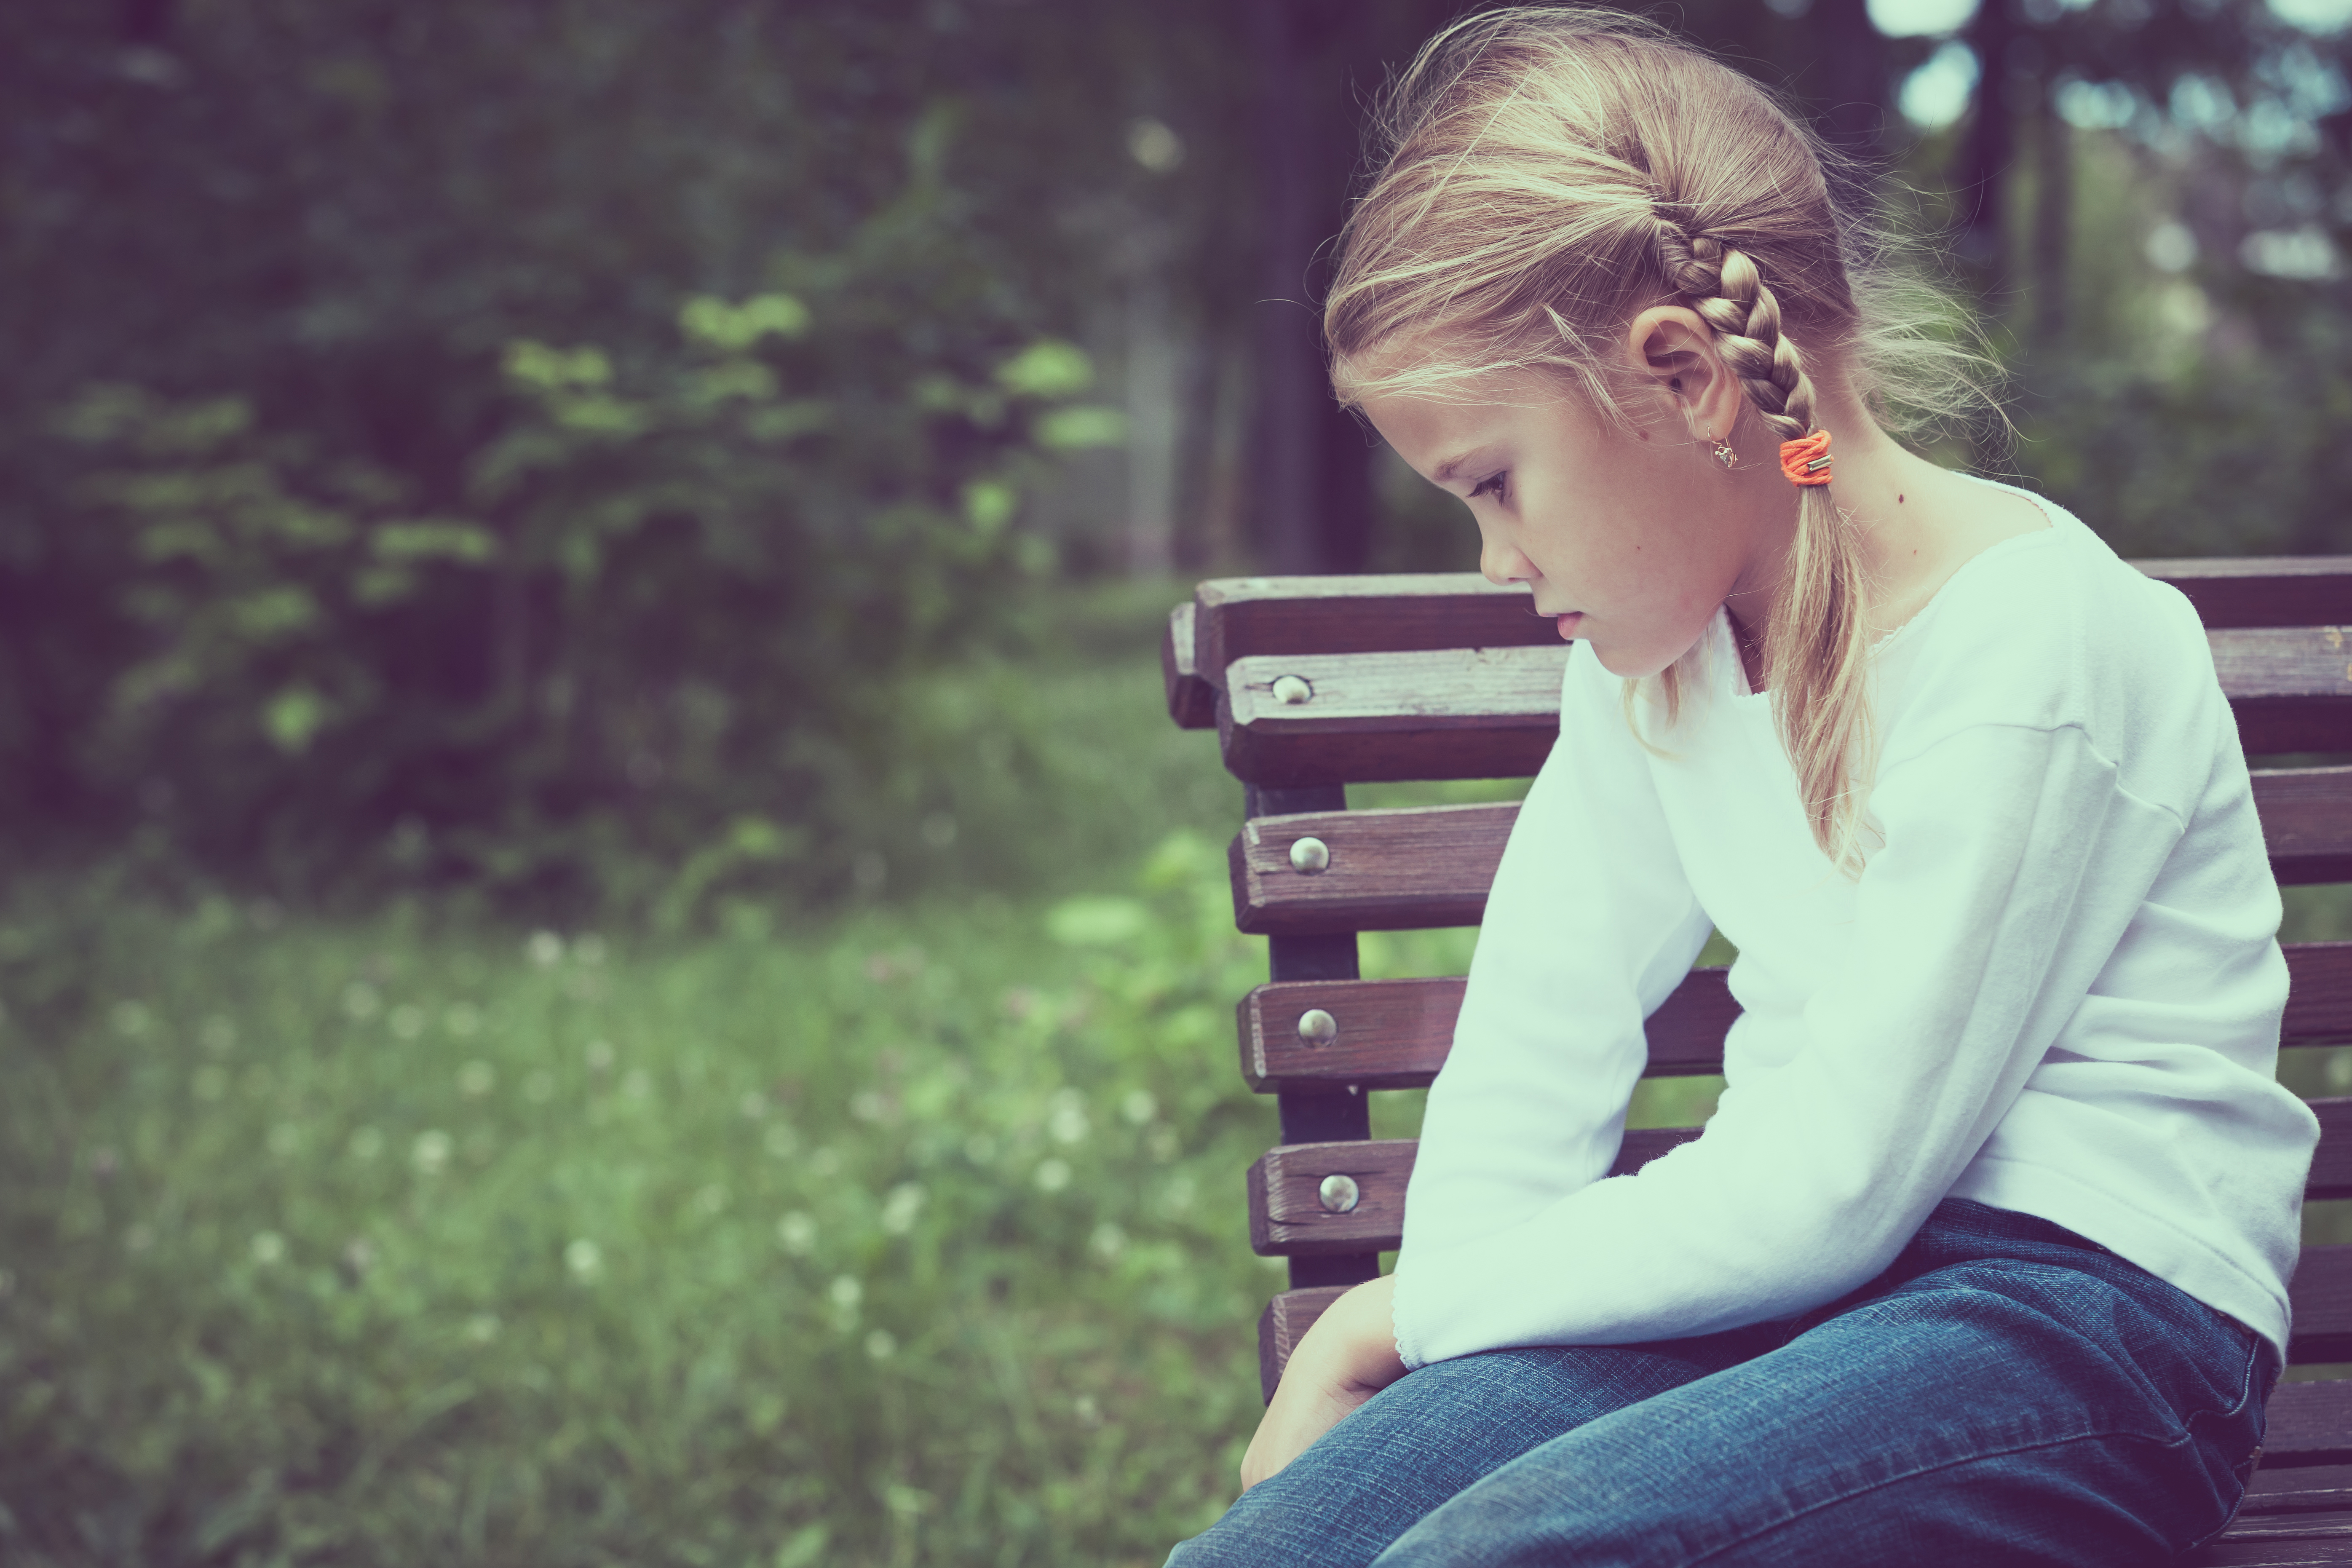 Une petite fille assise sur un banc | Source : Shutterstock